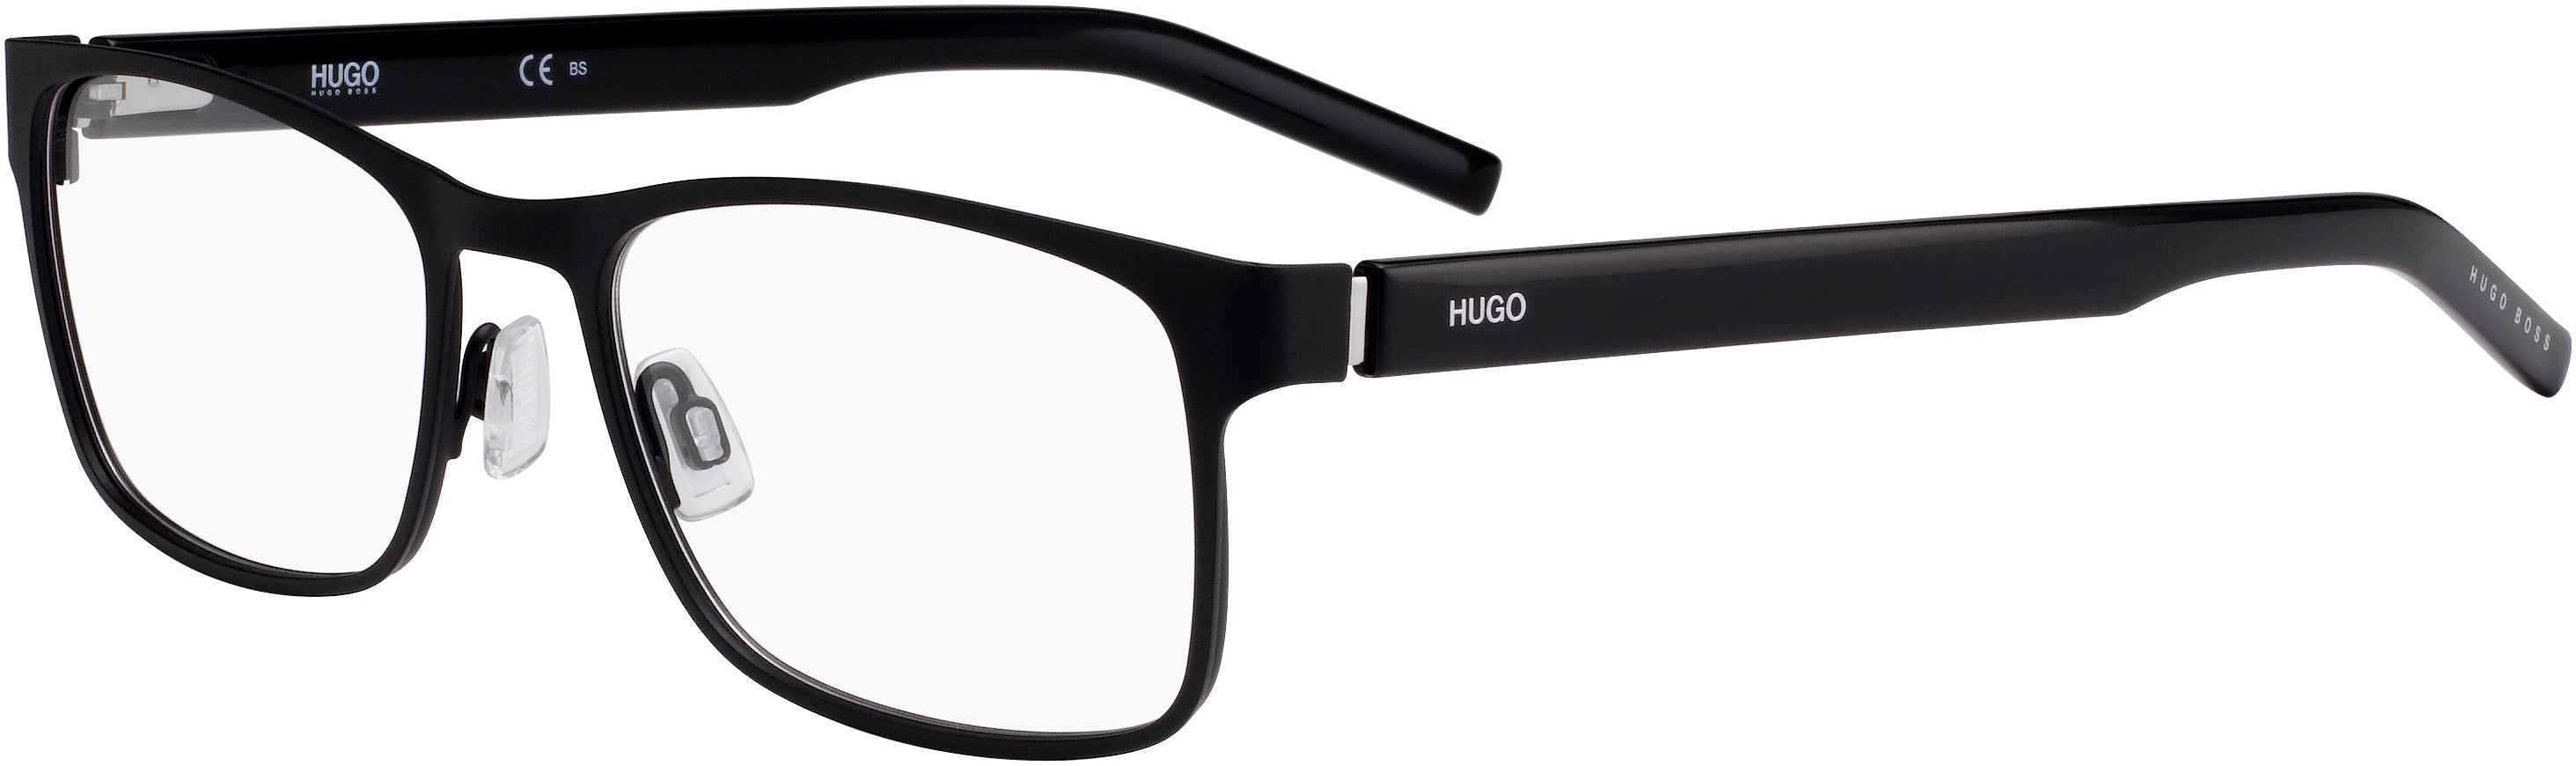 Hugo (hug) Hugo 1015 Rectangular Eyeglasses 0003-0003  Matte Black (00 Demo Lens)